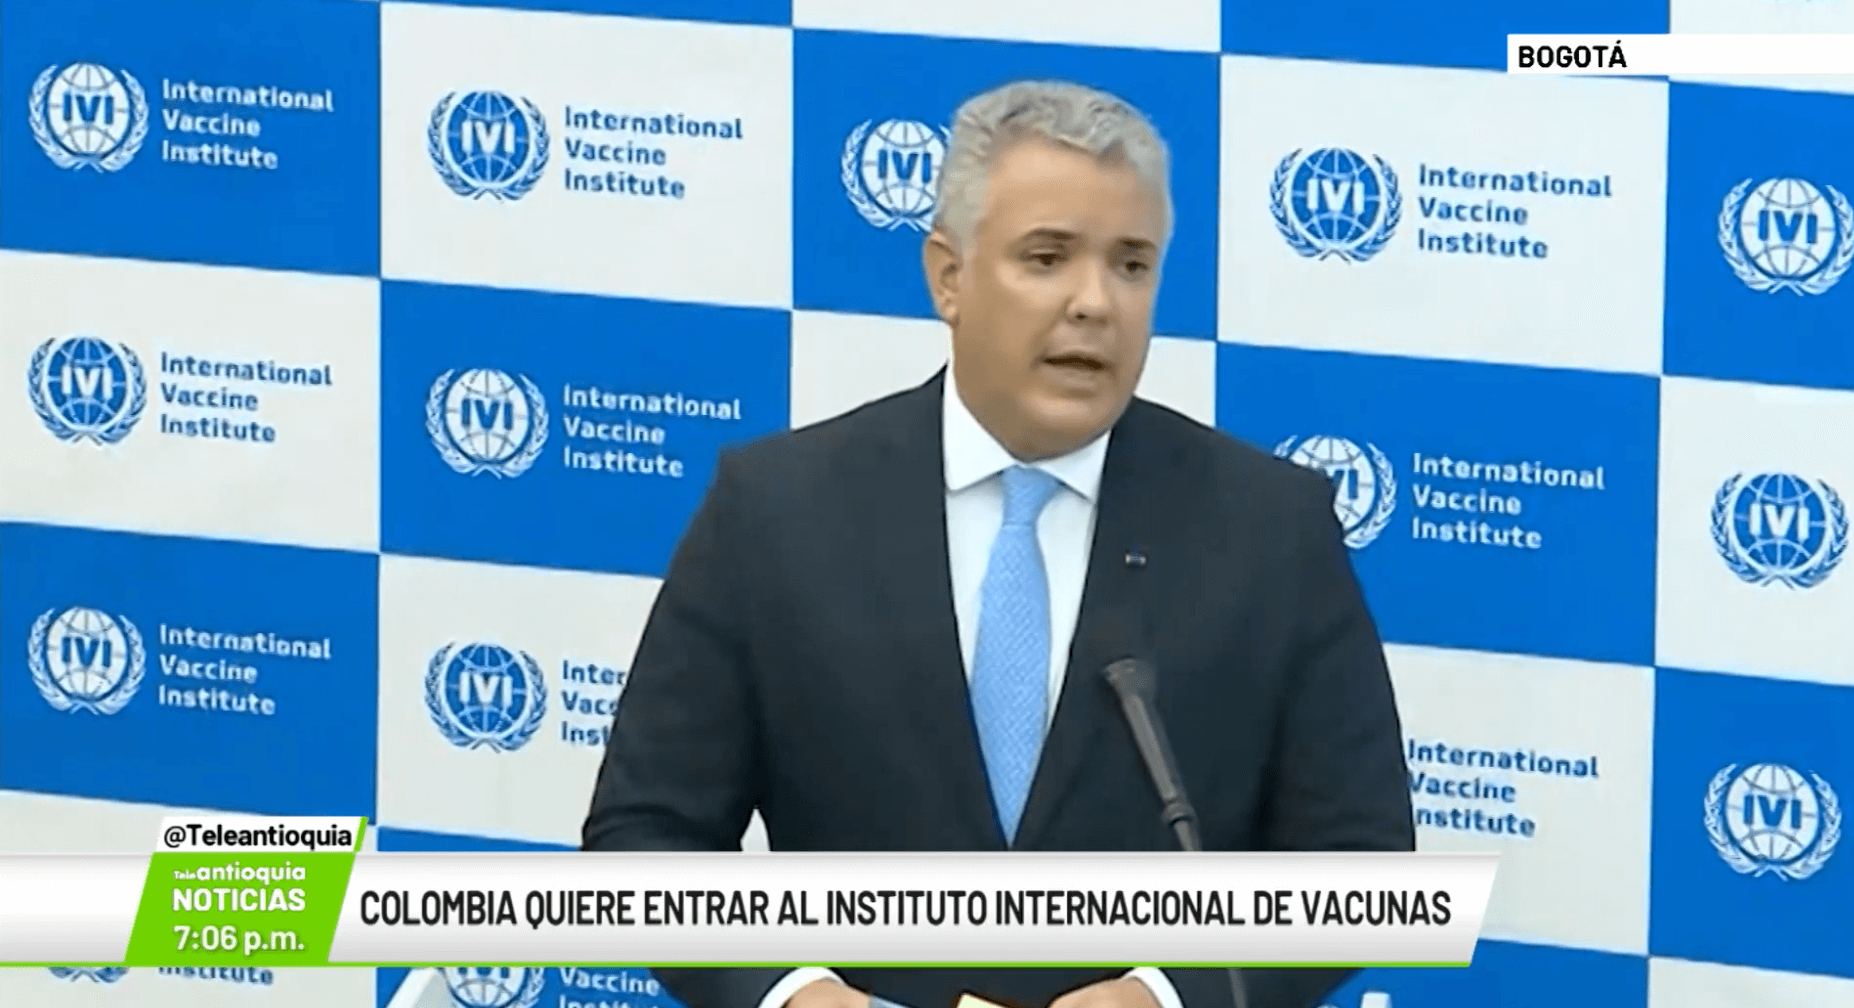 Colombia quiere entrar al Instituto Internacional de Vacunas